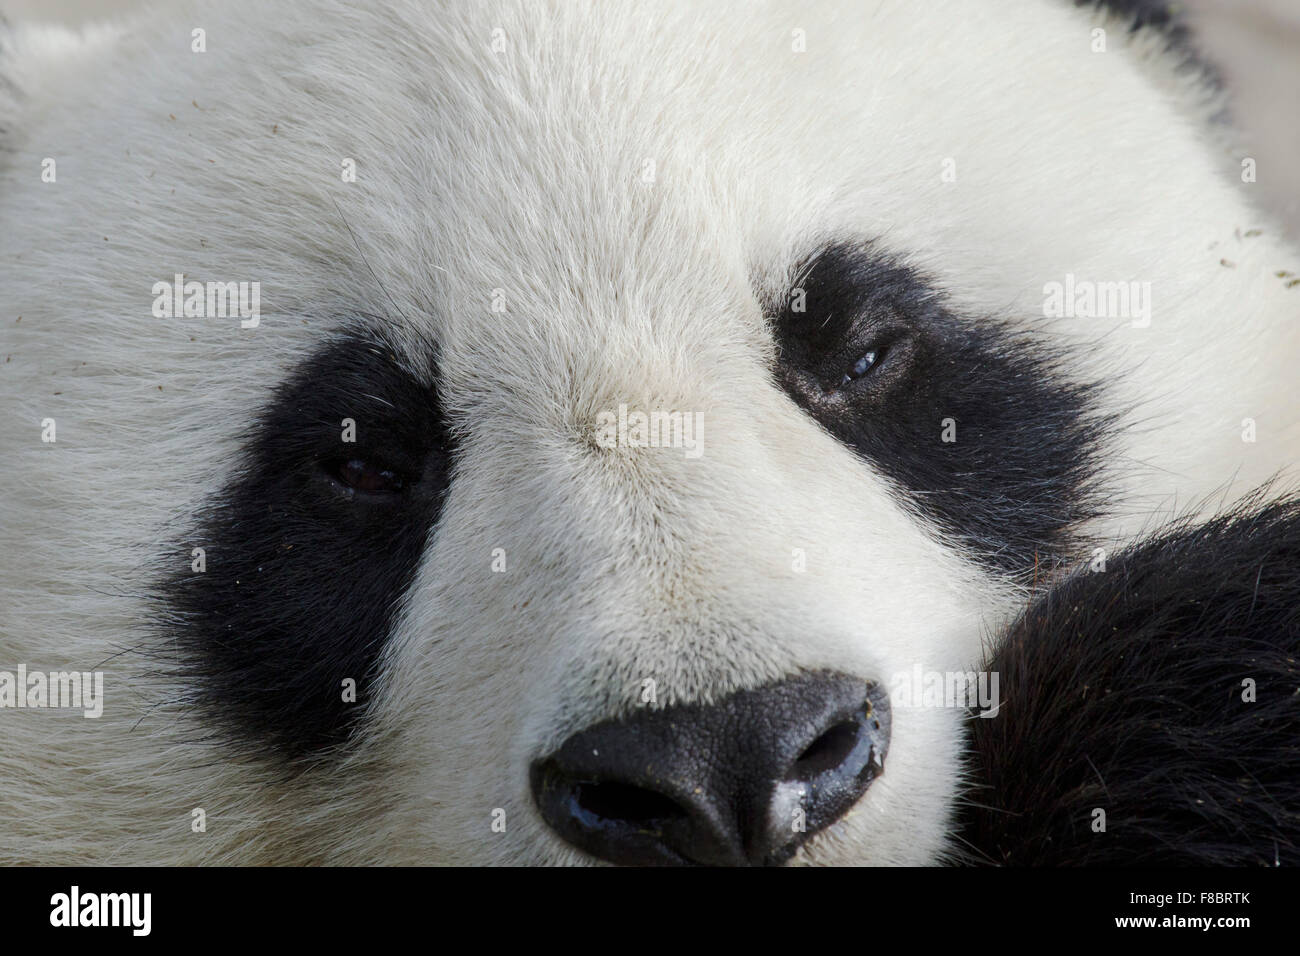 Panda close up Chengdu Panda Breeding Centre Sichuan Province China MA003082 Stock Photo